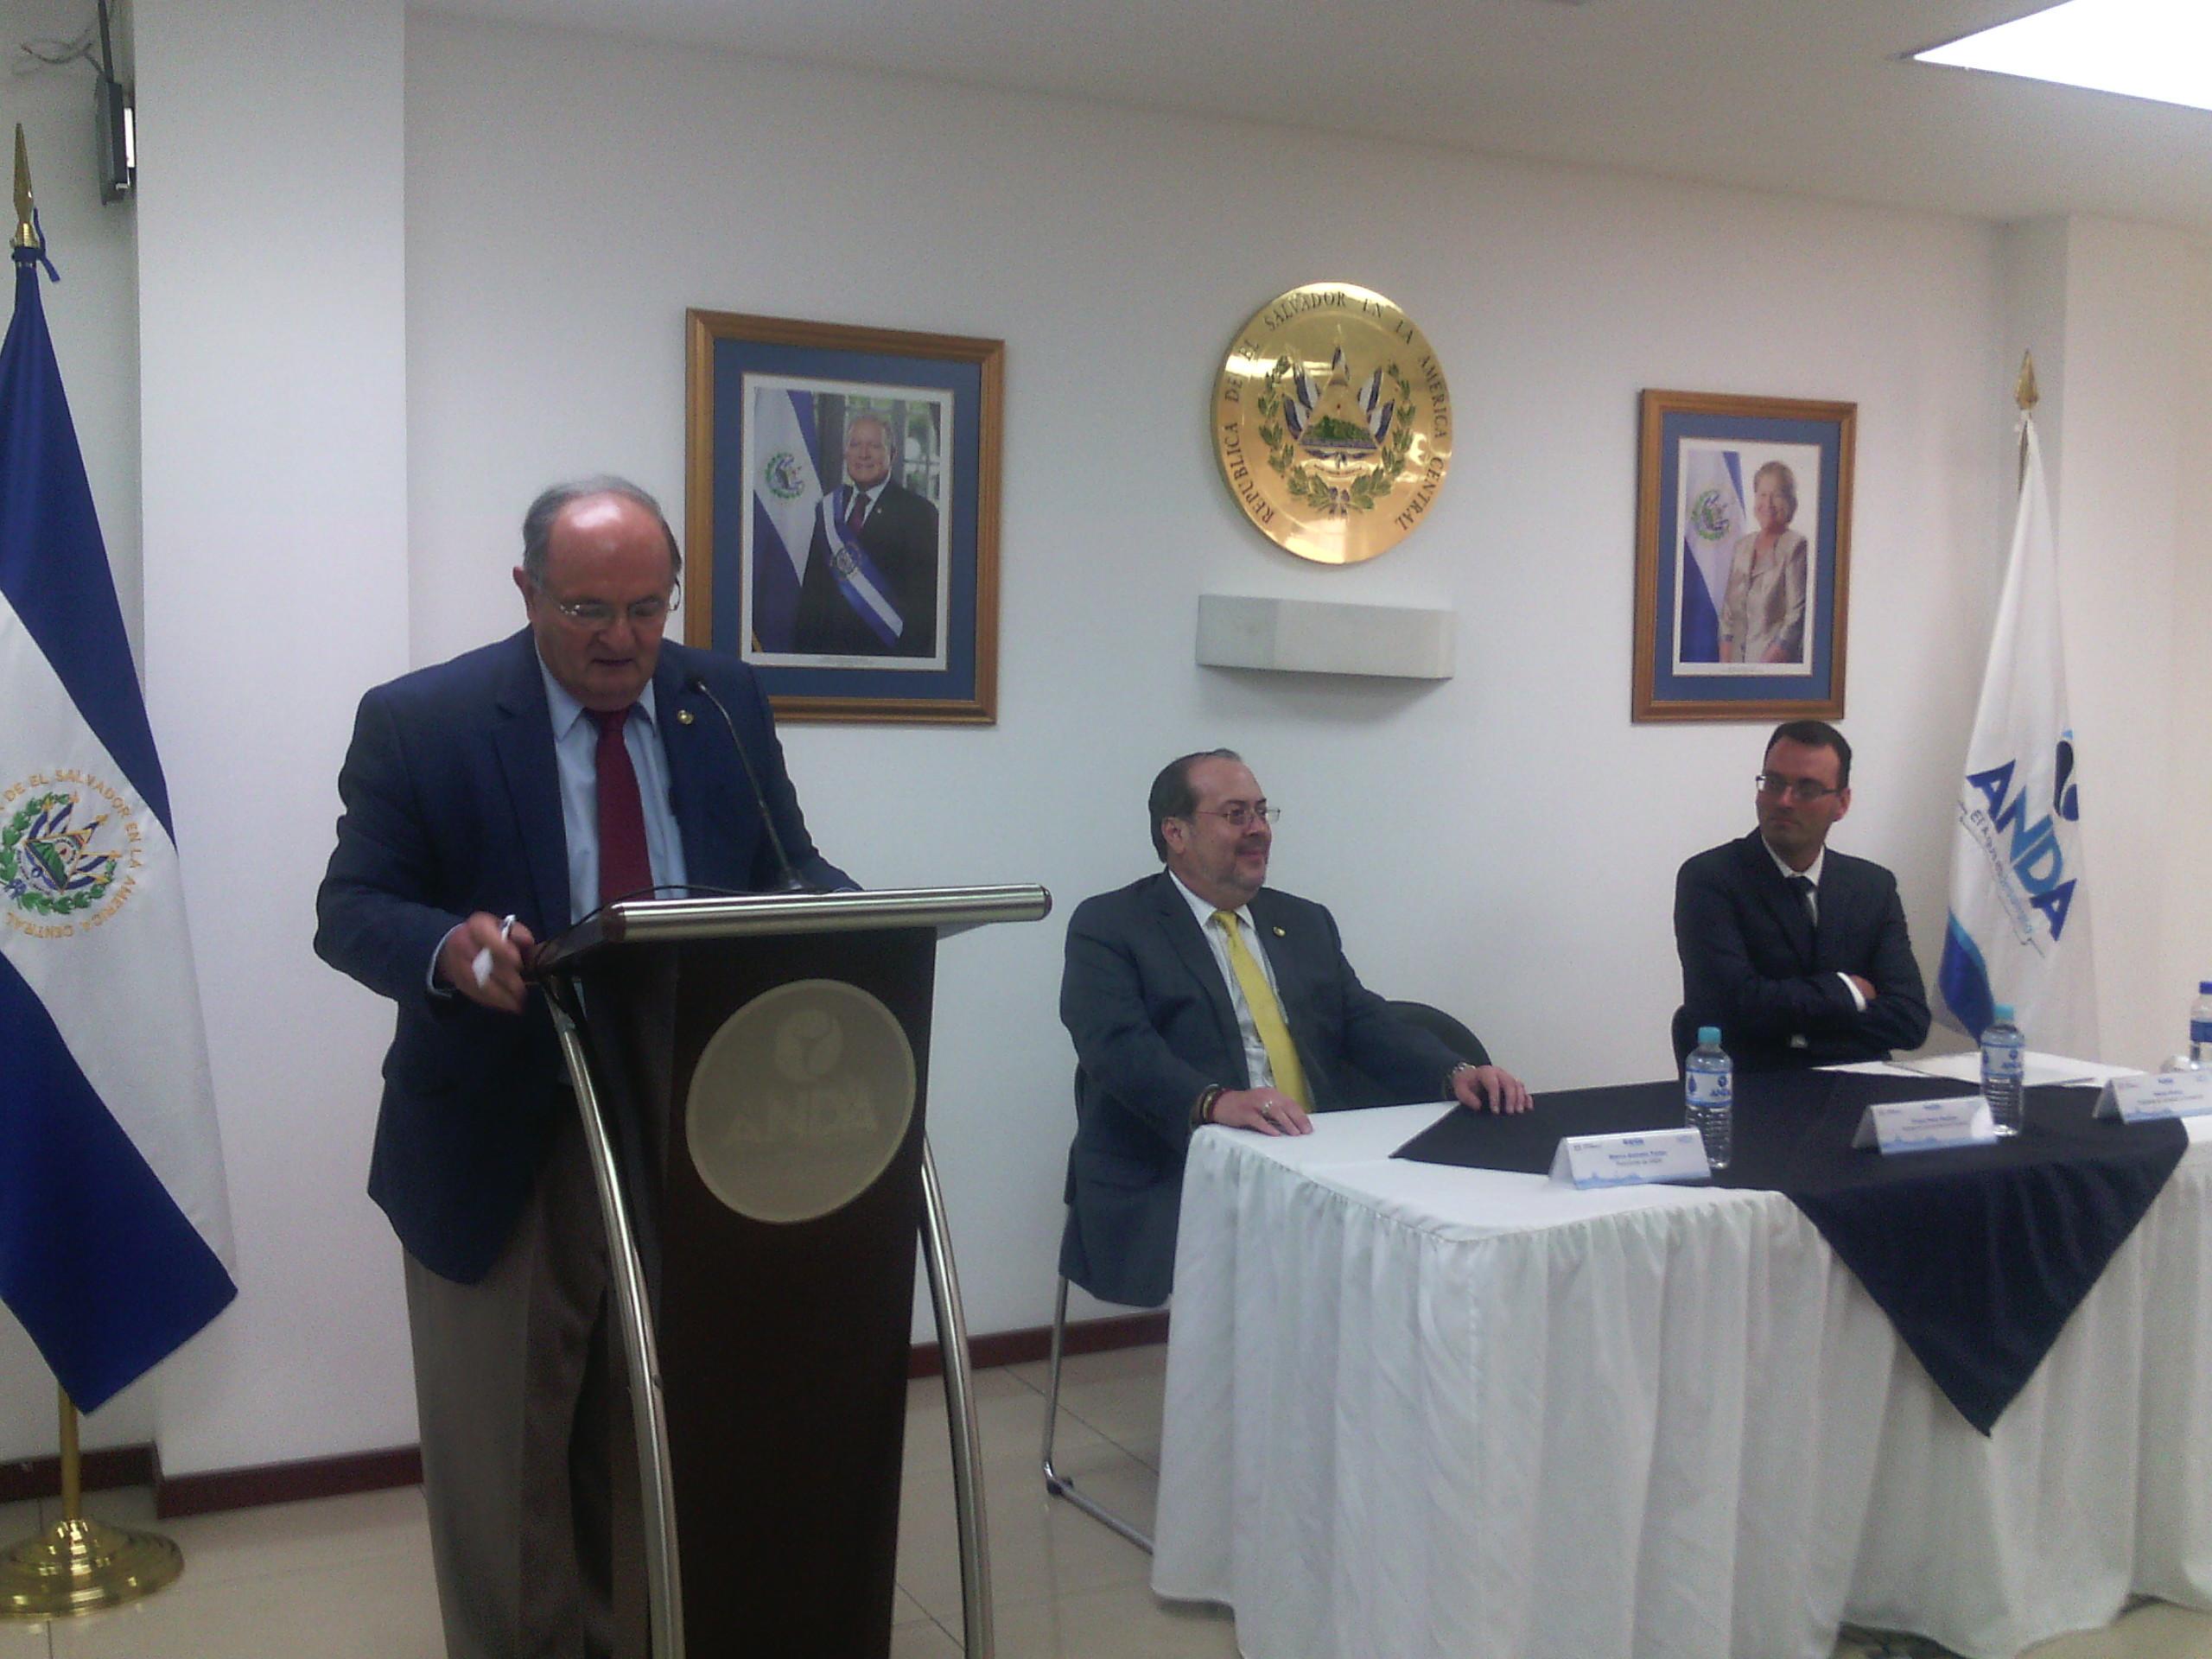 Firma del convenio entre ANDA e ILC en Casa Presidencial el 1 de febrero de 2016. En el podio, el secretario de Gobernabilidad, Hato Hasbún. En la mesa, a la izquierda, el presidente de ANDA. A la derecha, el presidente de ILC. 